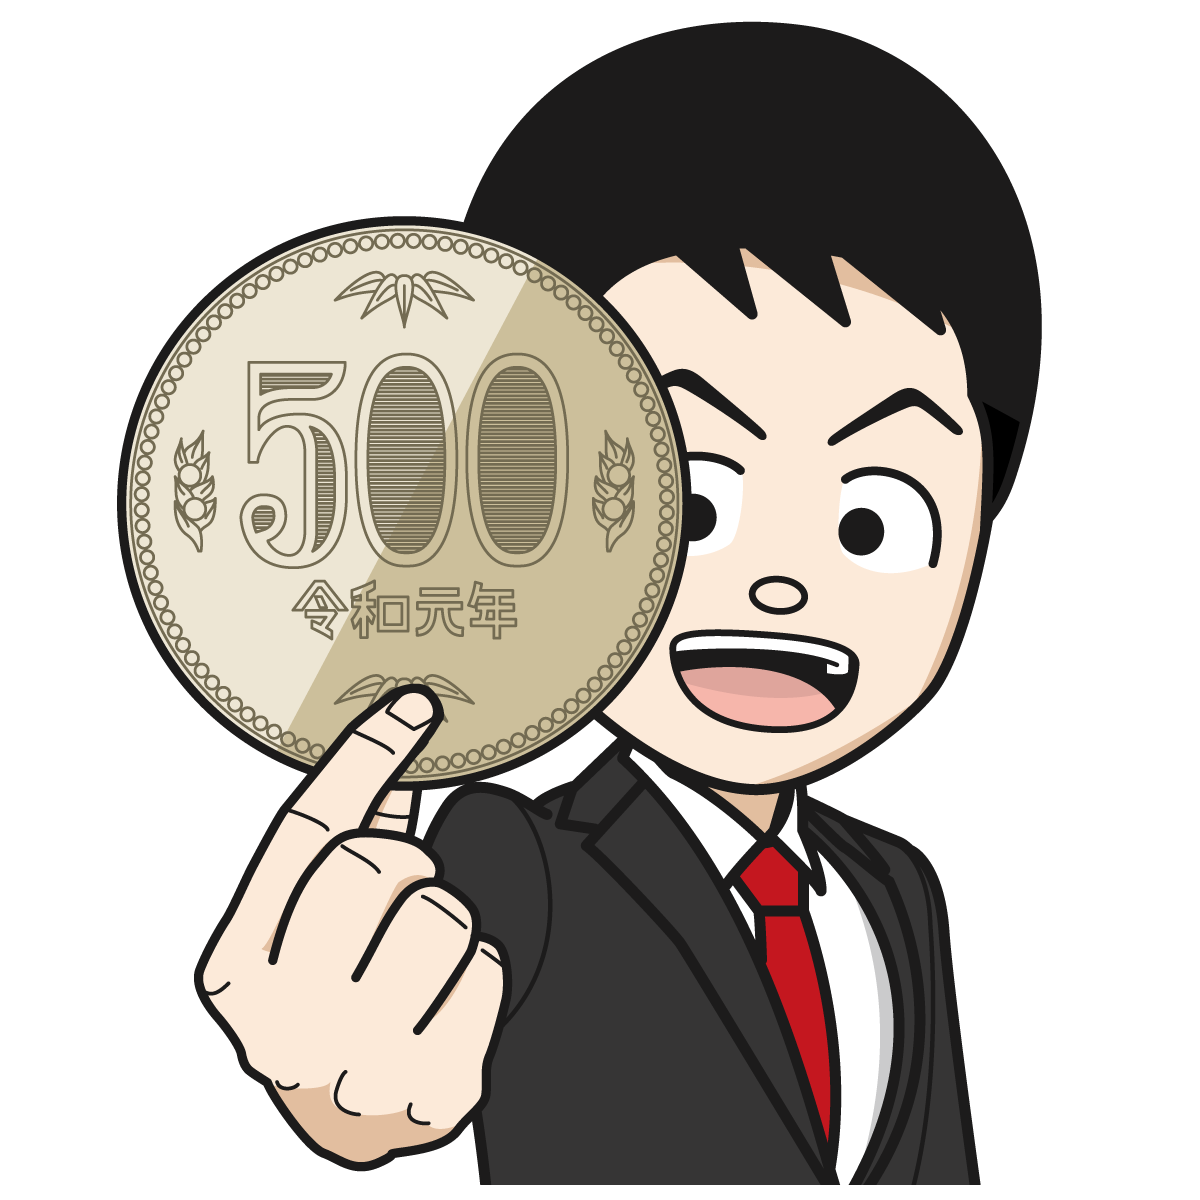 大きな500円を見せるサラリーマン 銀行員 公務員 男 Item 21 イラスト Mido Kichi